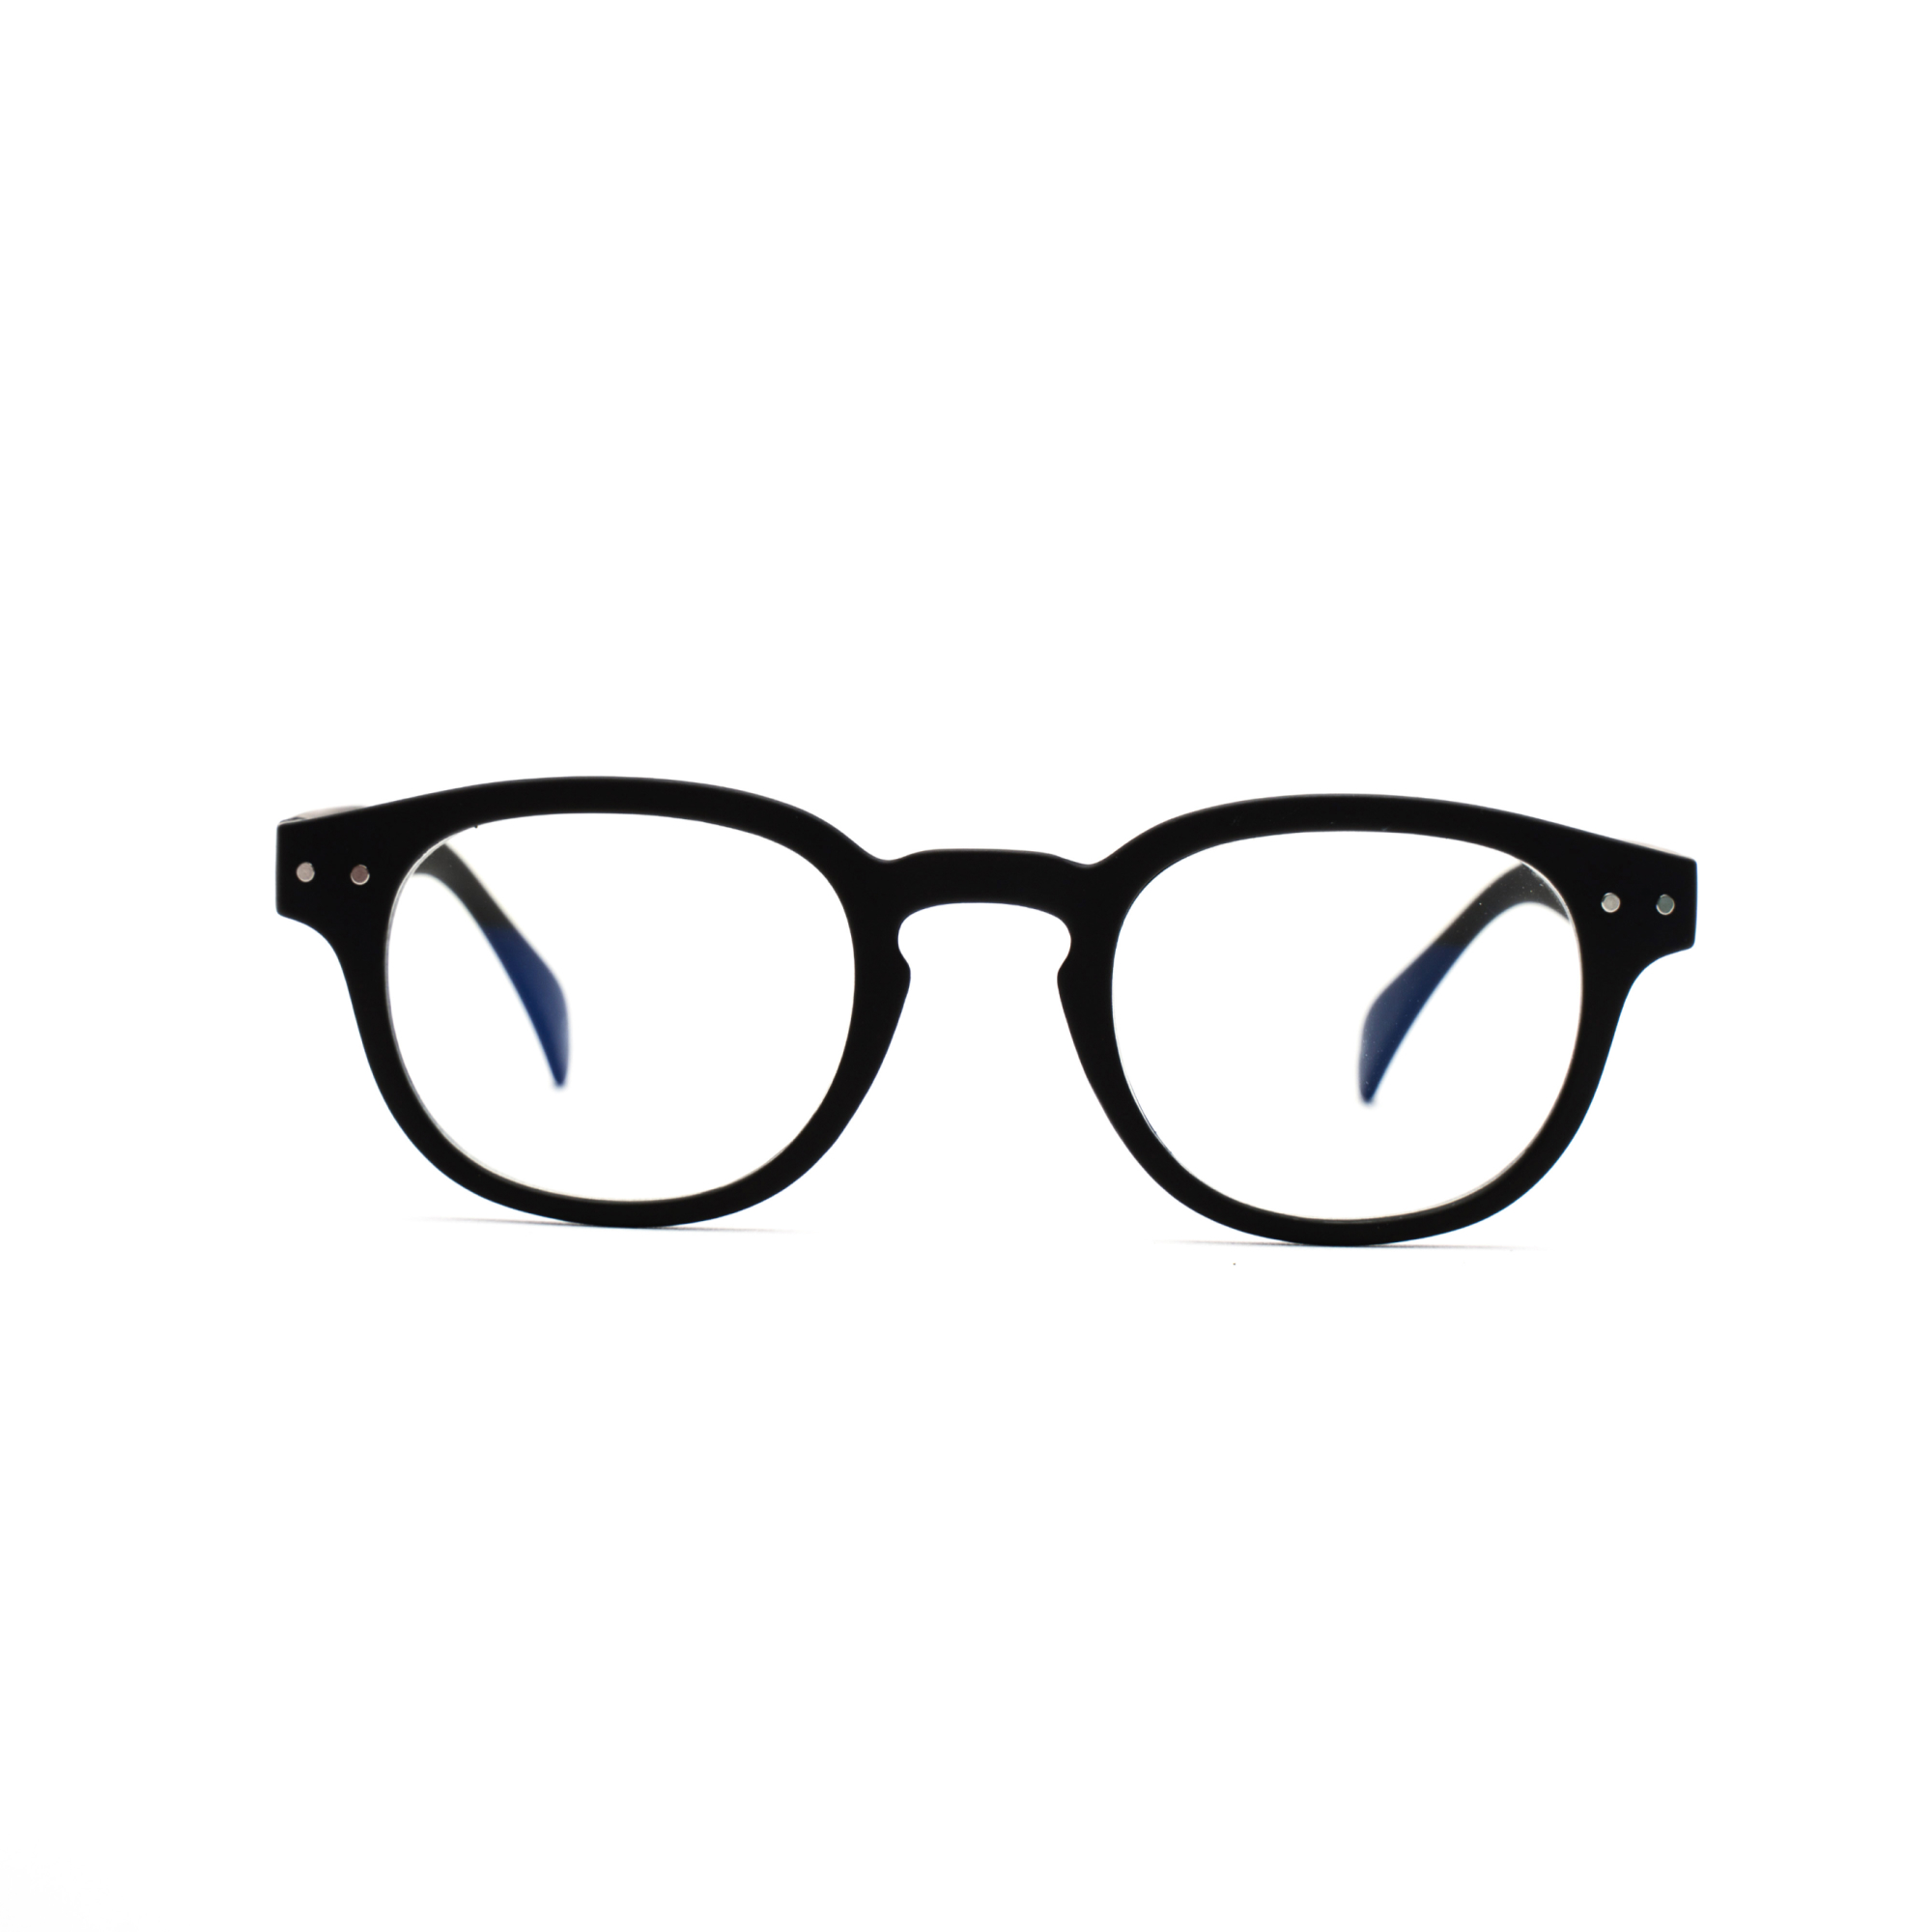 women's reading glasses – Anton ultimate - Black